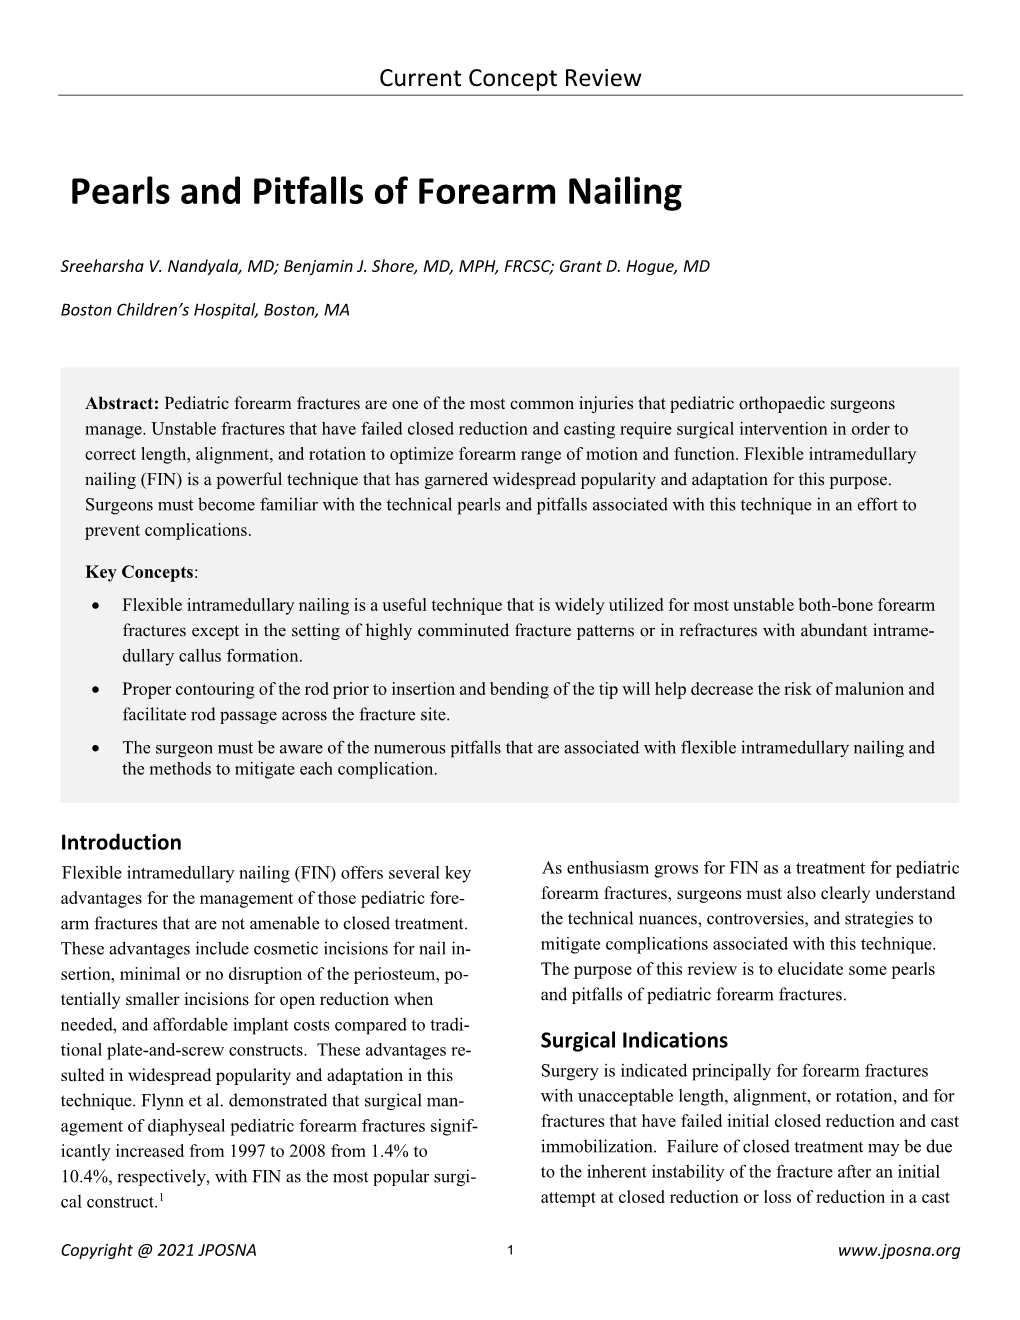 Pearls and Pitfalls of Forearm Nailing